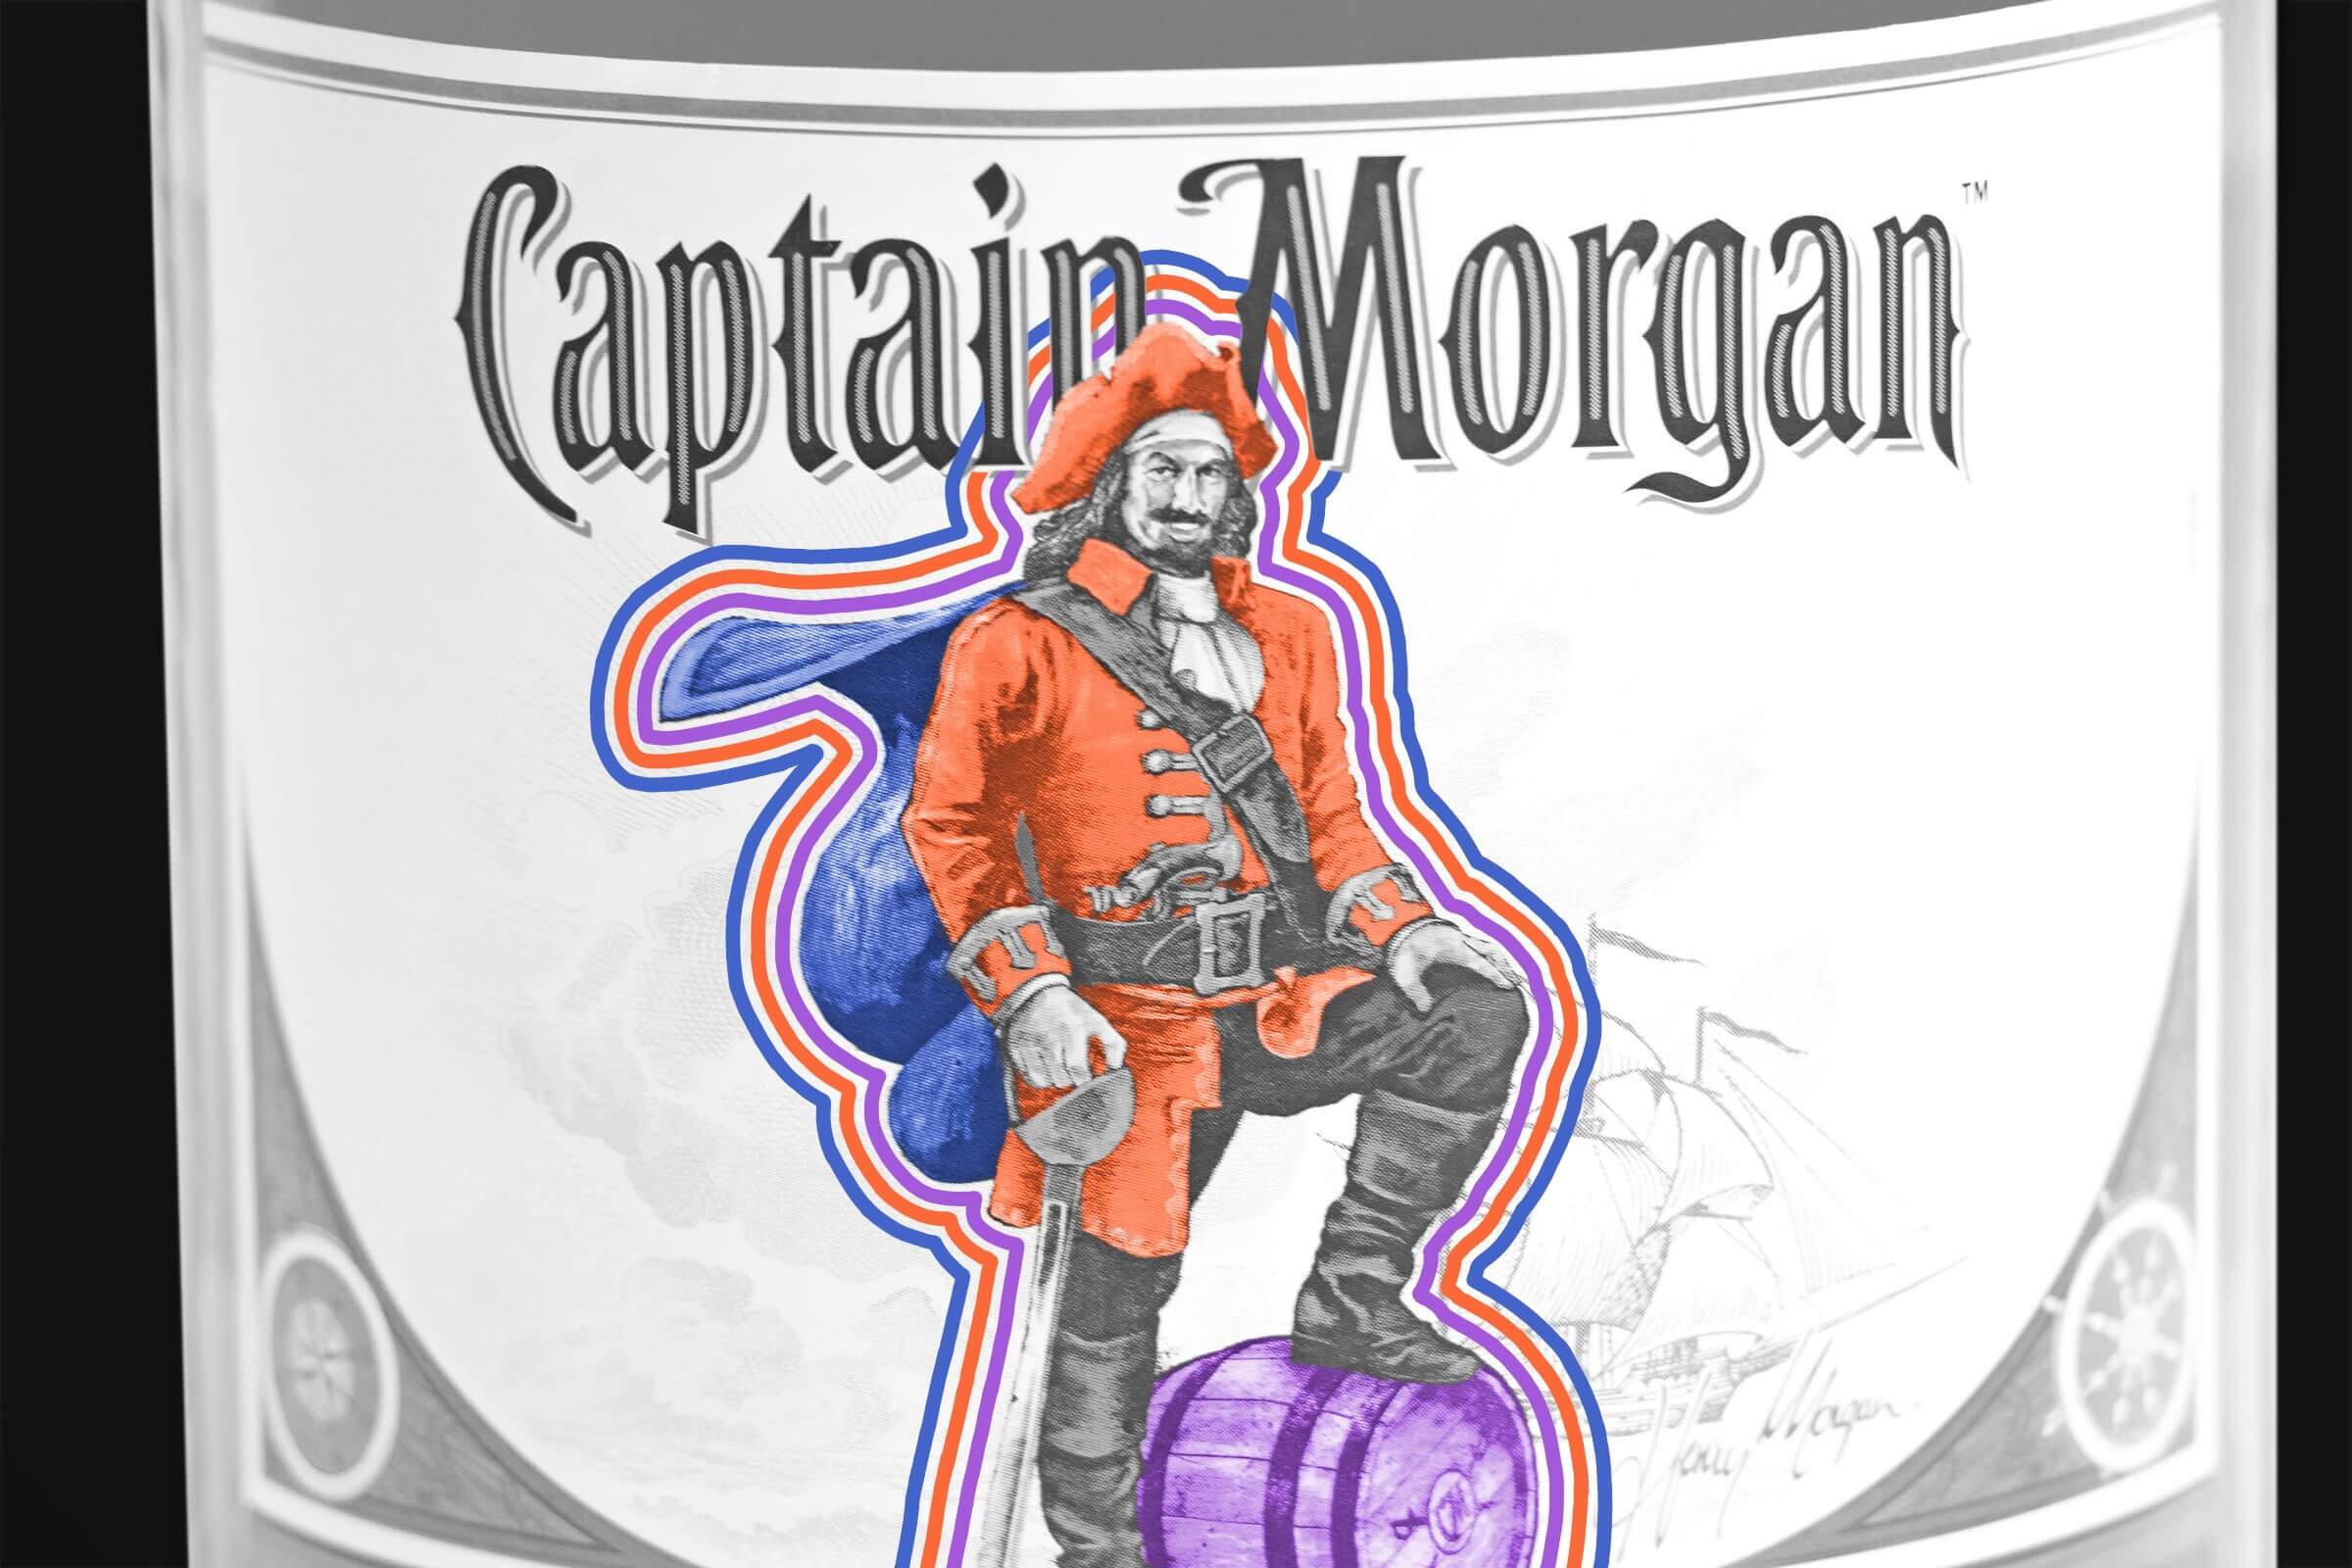 Captain Morgan was a real person.